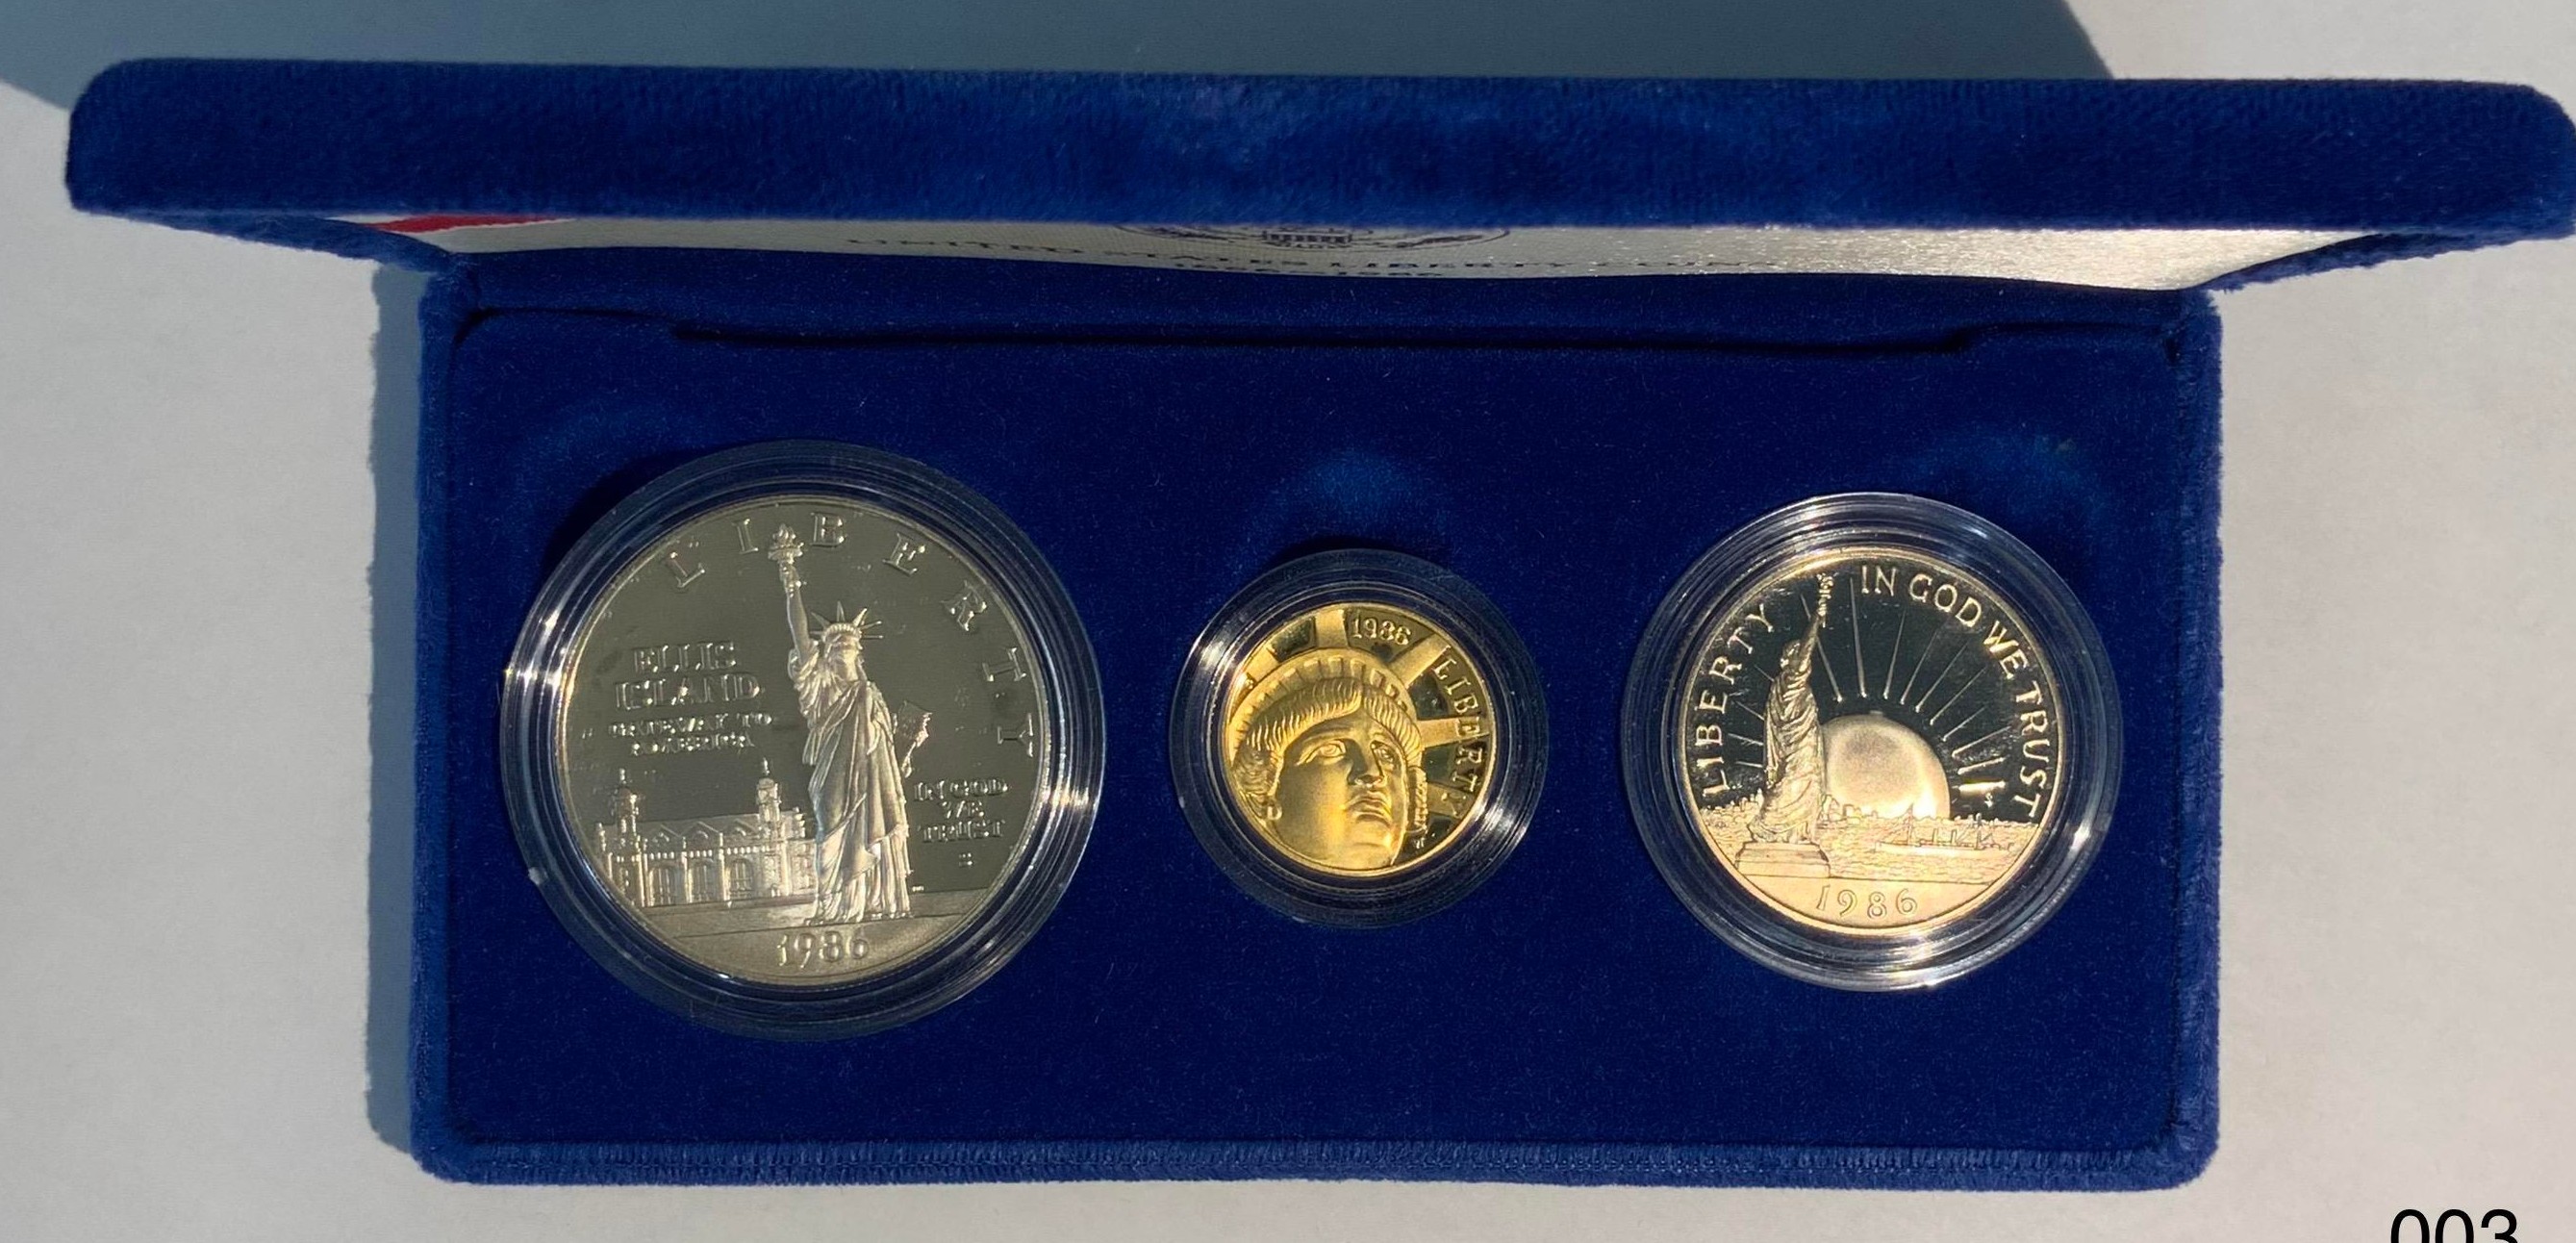 アメリカ-U.S.A. 自由の女神100周年記念 金・銀・白銅貨3種揃プルーフ 